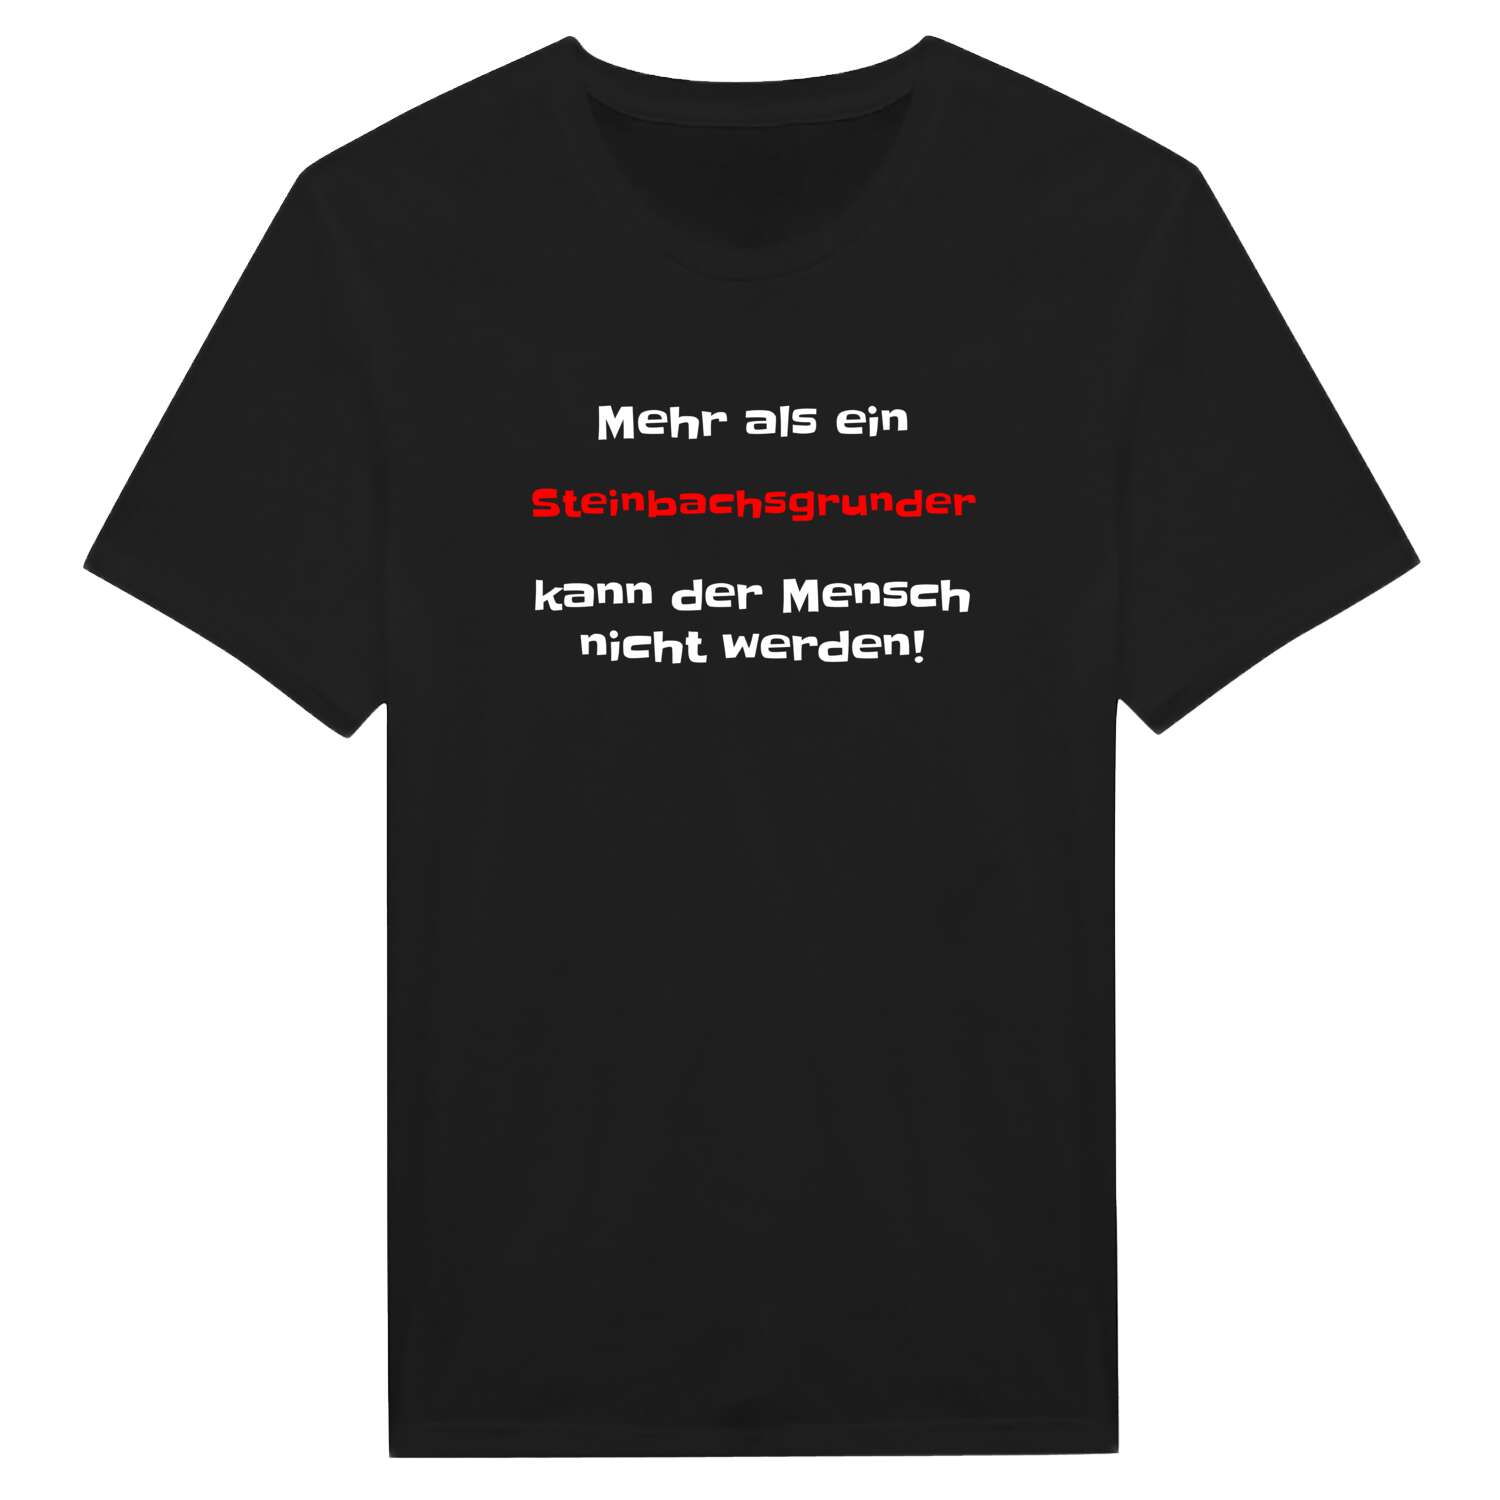 Steinbachsgrund T-Shirt »Mehr als ein«